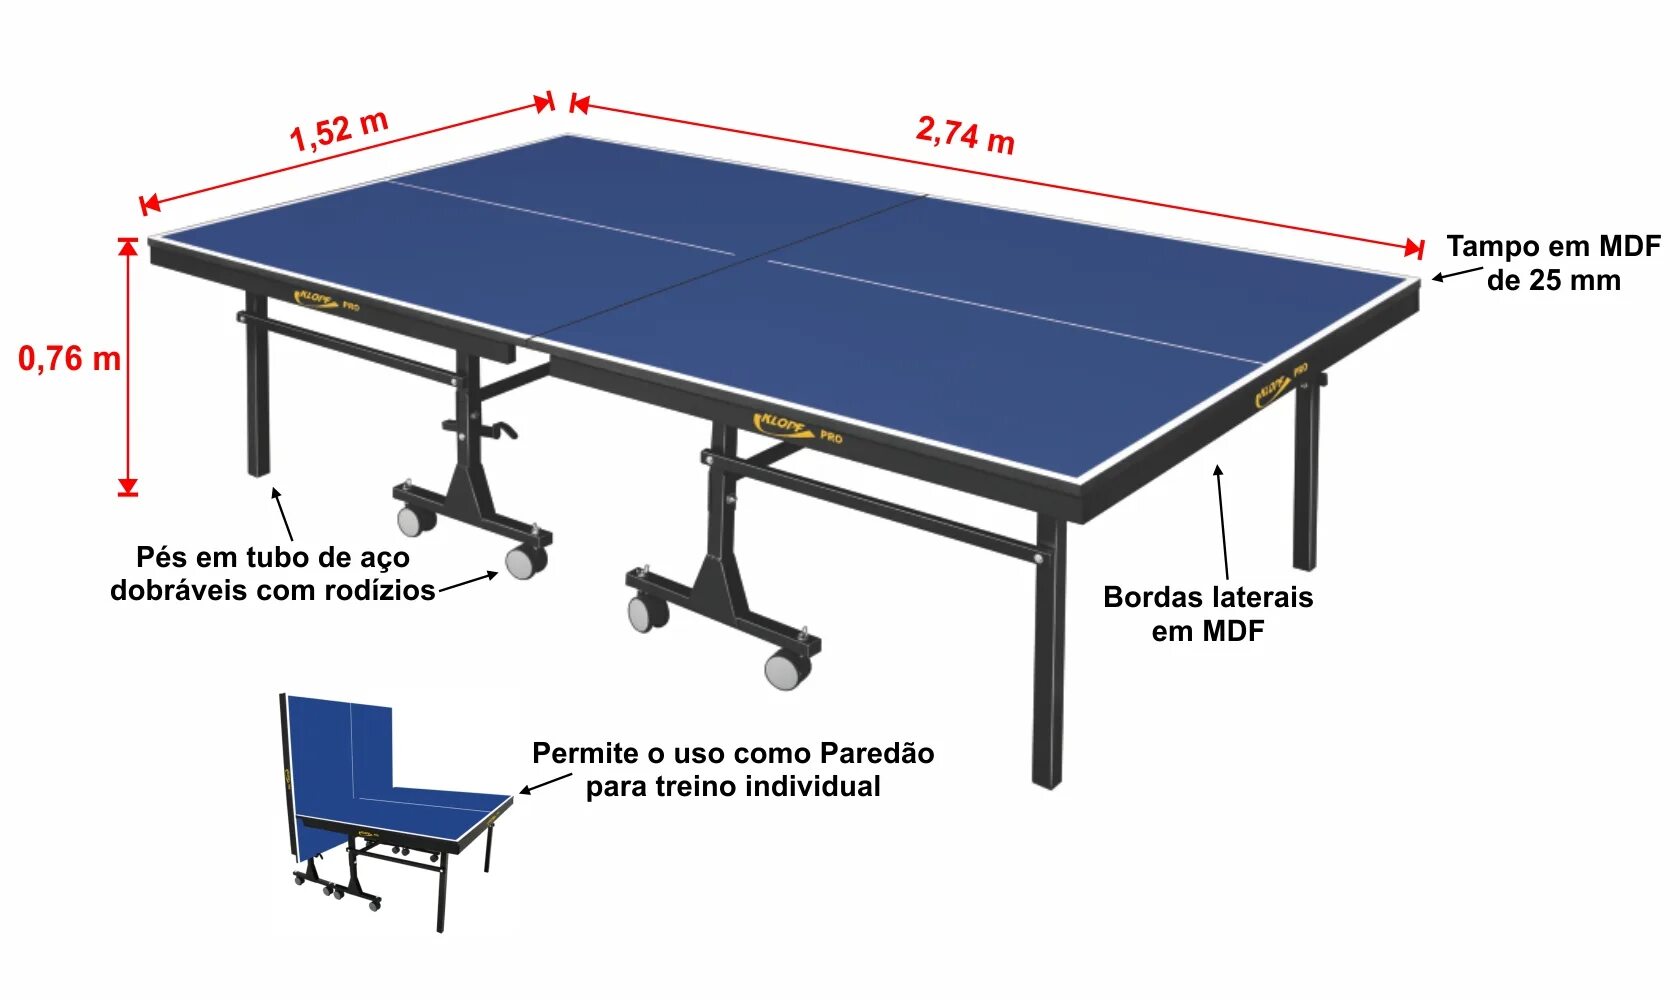 Высота настольного стола. Высота теннисного стола для настольного тенниса. Размеры настольного теннисного стола стандарт. Ширина разметки теннисного стола. Габариты теннисного стола настольного тенниса.